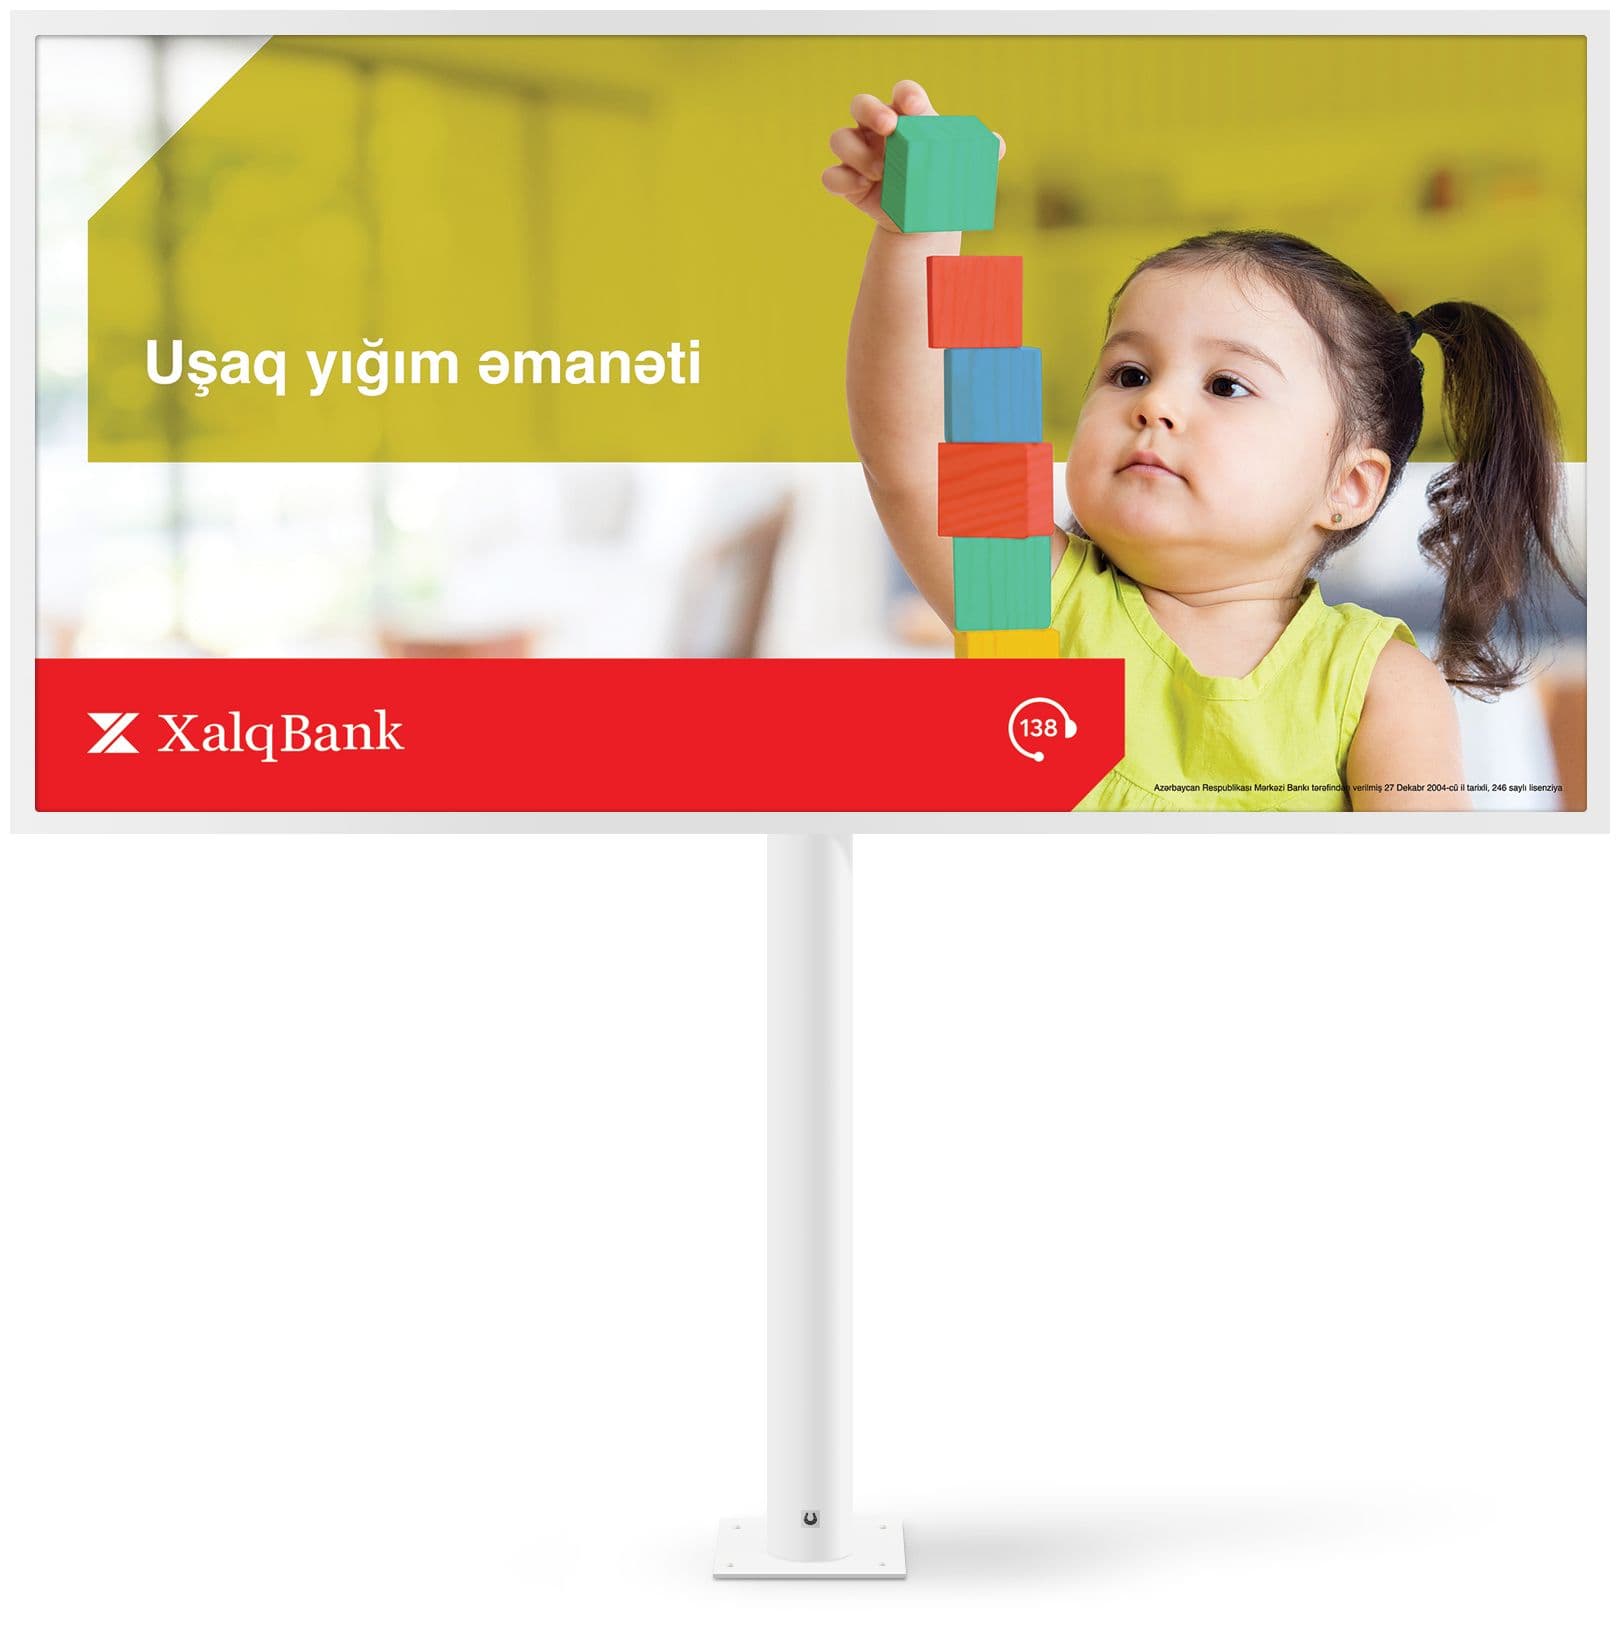 3-xalqbank_loan-billboard.jpg